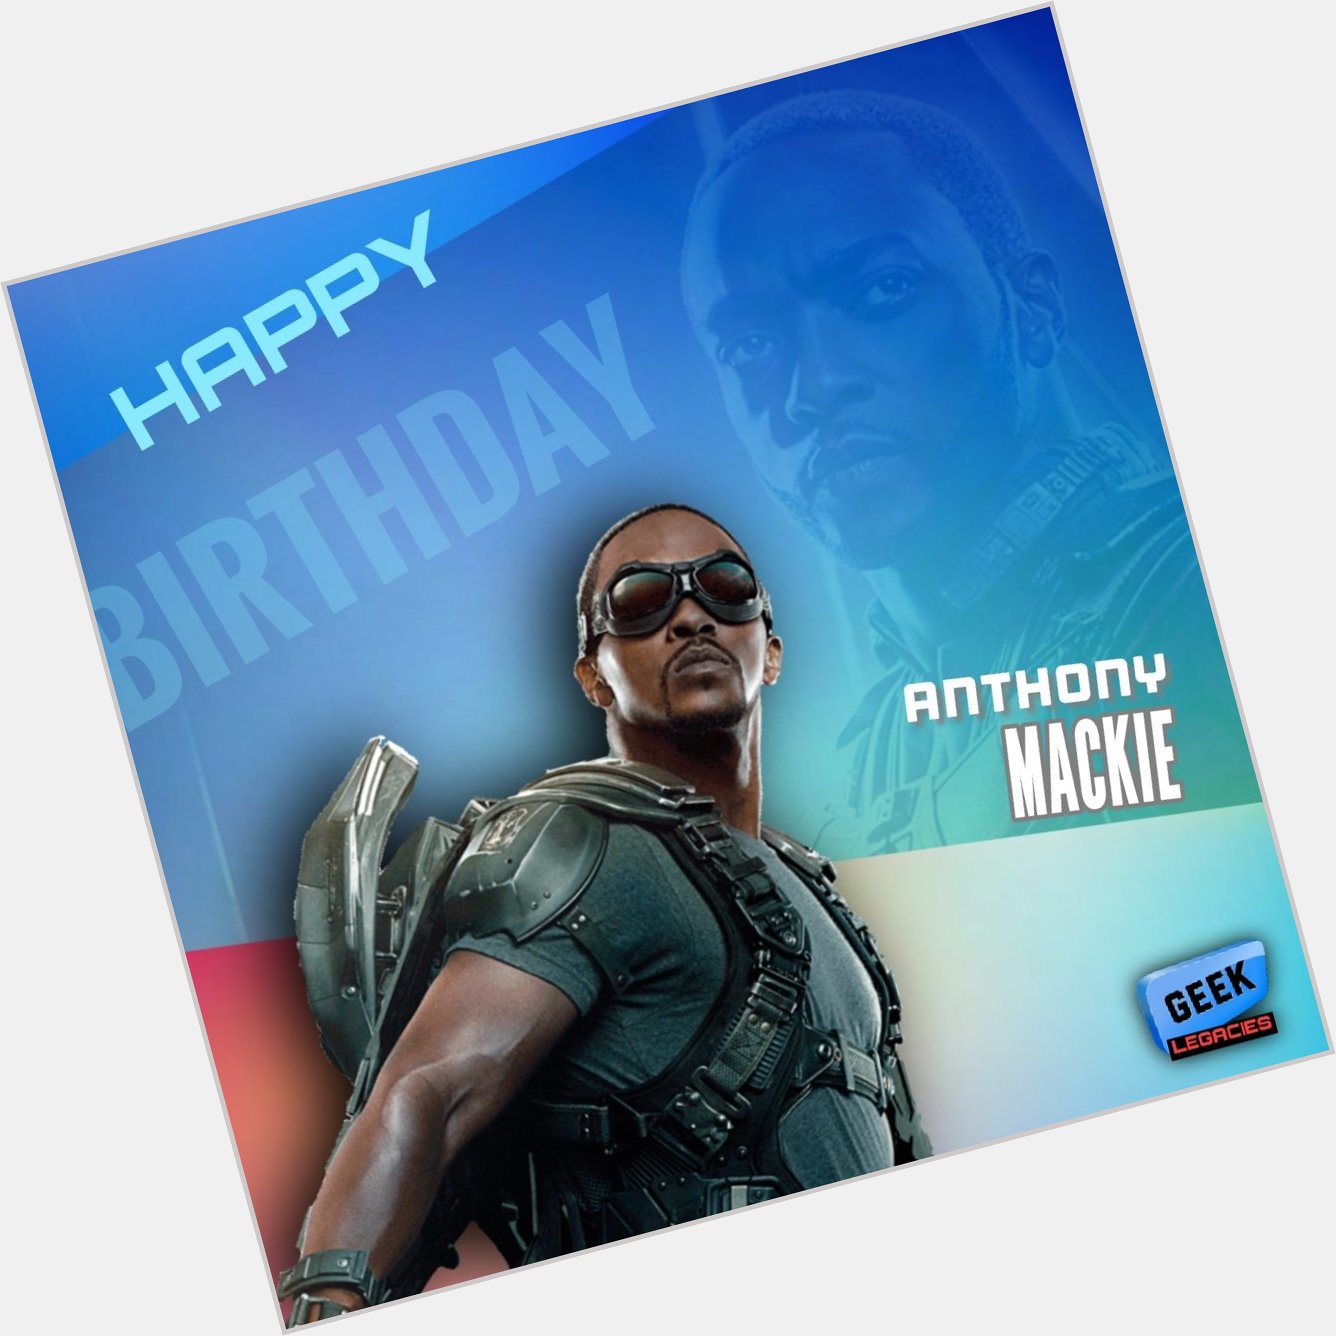 ¡Felíz cumpleaños Anthony Mackie!

* Happy birthday Anthony Mackie! 